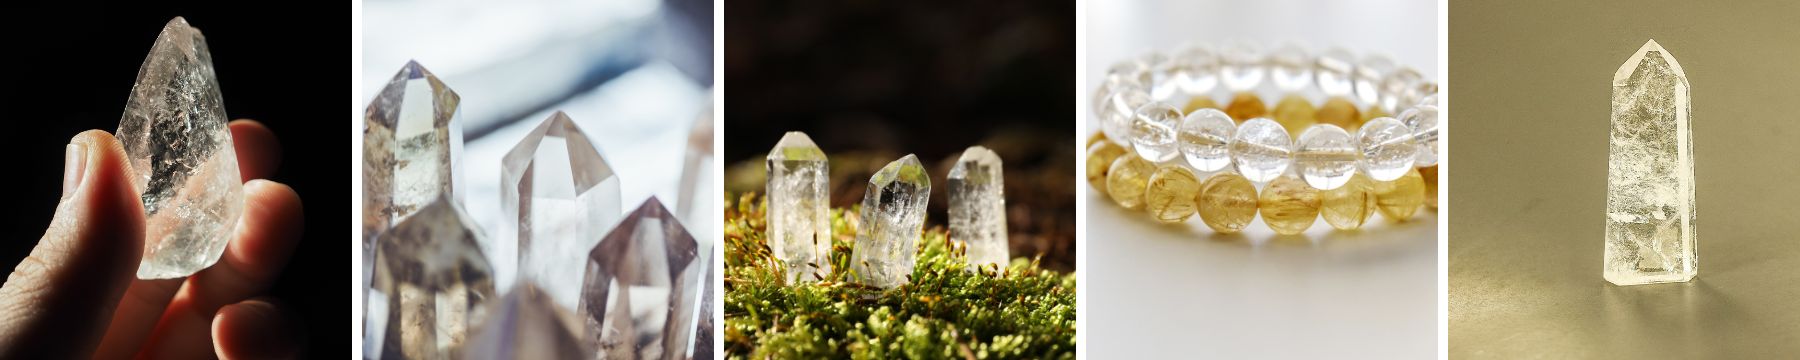 crystals for summer solstice - clear quartz